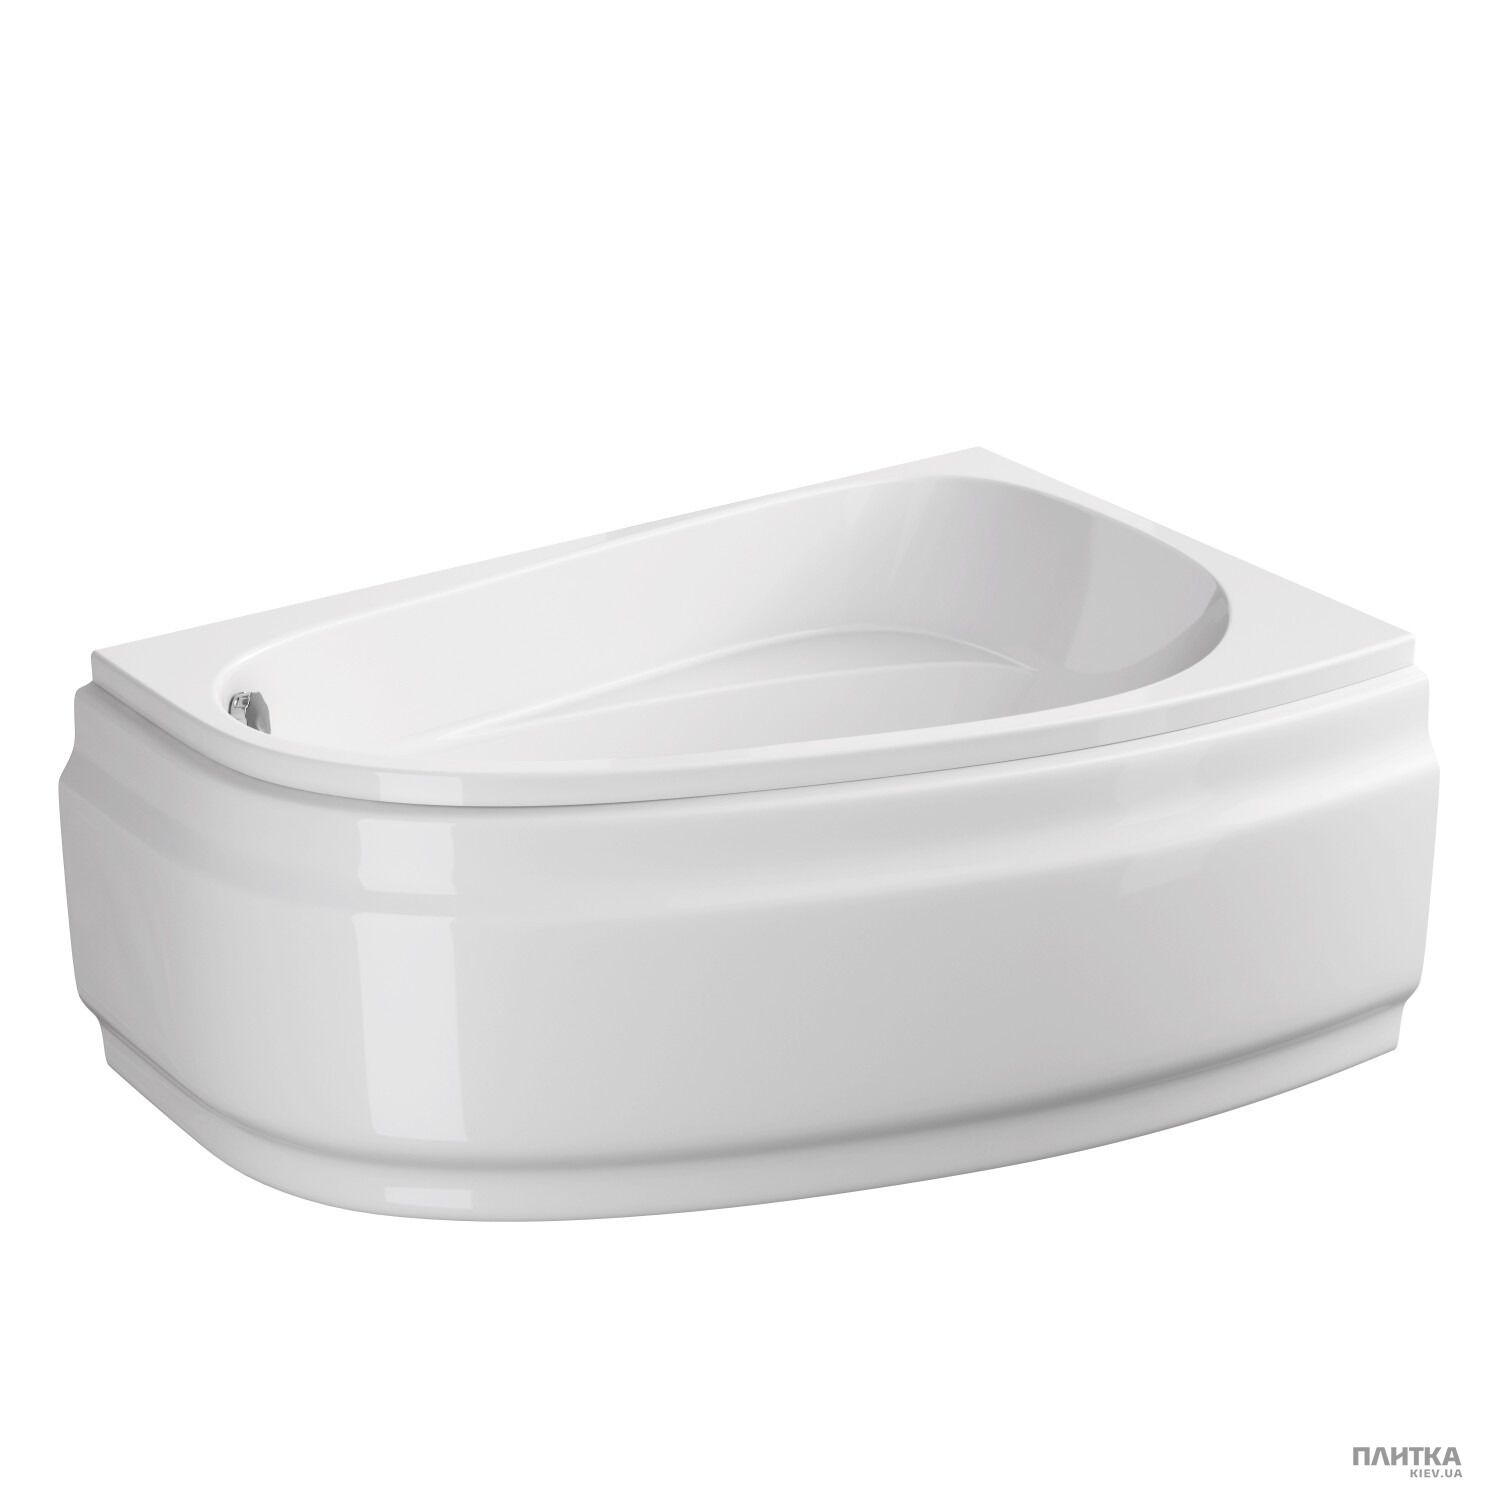 Акриловая ванна Cersanit Joanna New 140x90 см правая, асимметричная белый